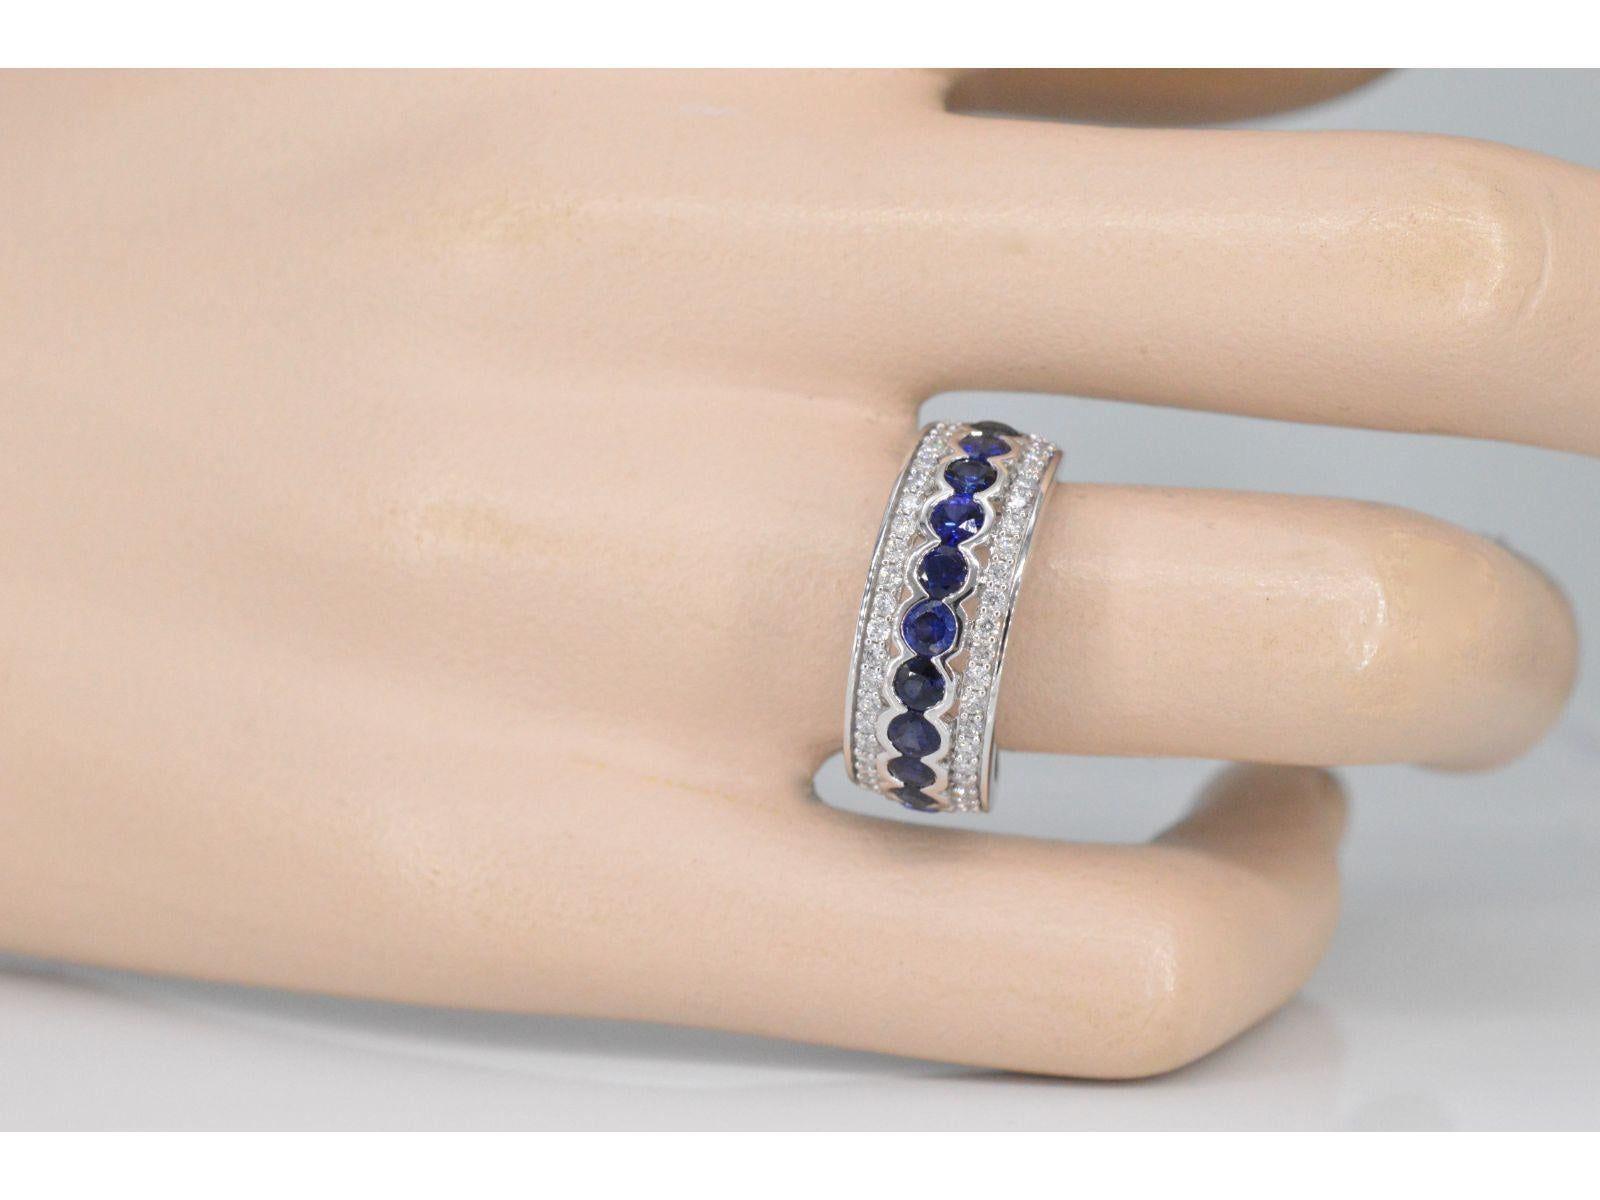 Wir präsentieren einen atemberaubenden Ring, der den Glanz von Diamanten mit dem tiefen Charme eines blauen Saphirs verbindet. Der Ring ist mit Diamanten im Brillantschliff mit einem Gesamtgewicht von 0,50 Karat besetzt. Diese Diamanten haben eine